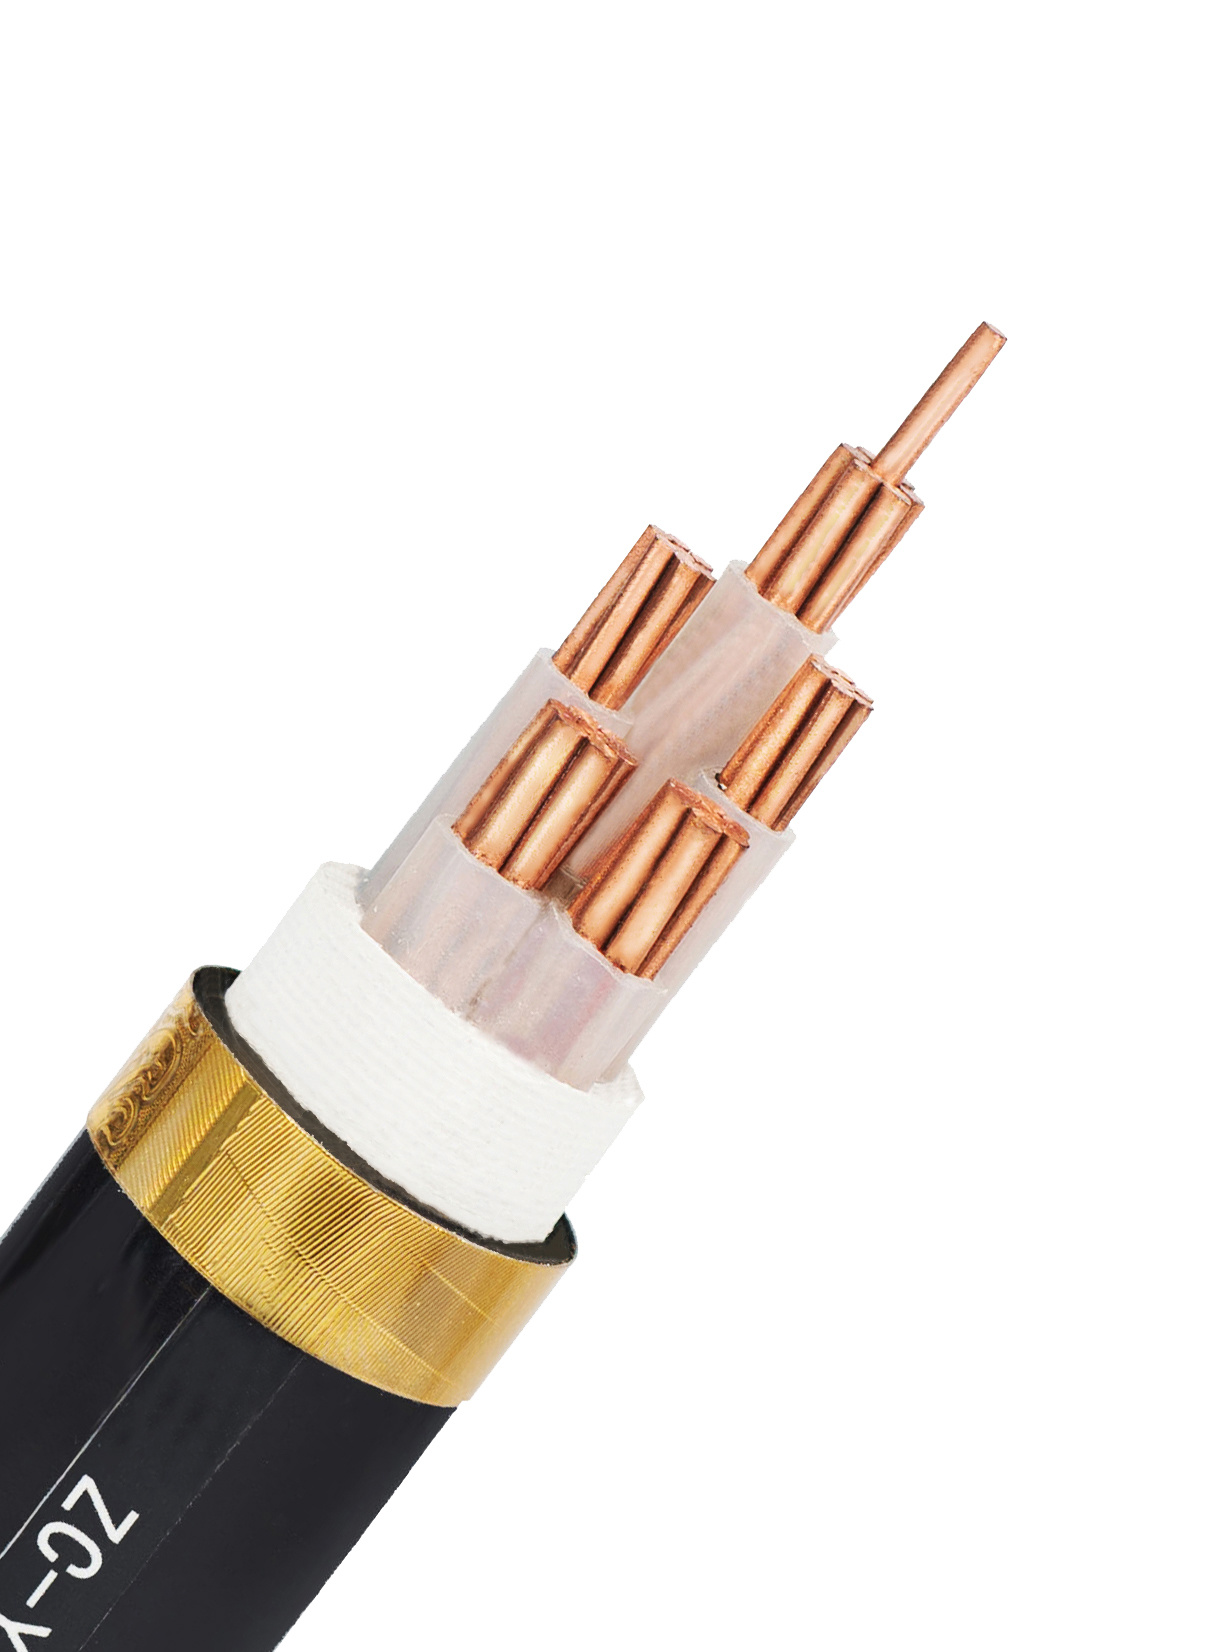 
                Câble en PVC souple et flexible sur le fil de cuivre étamé
            